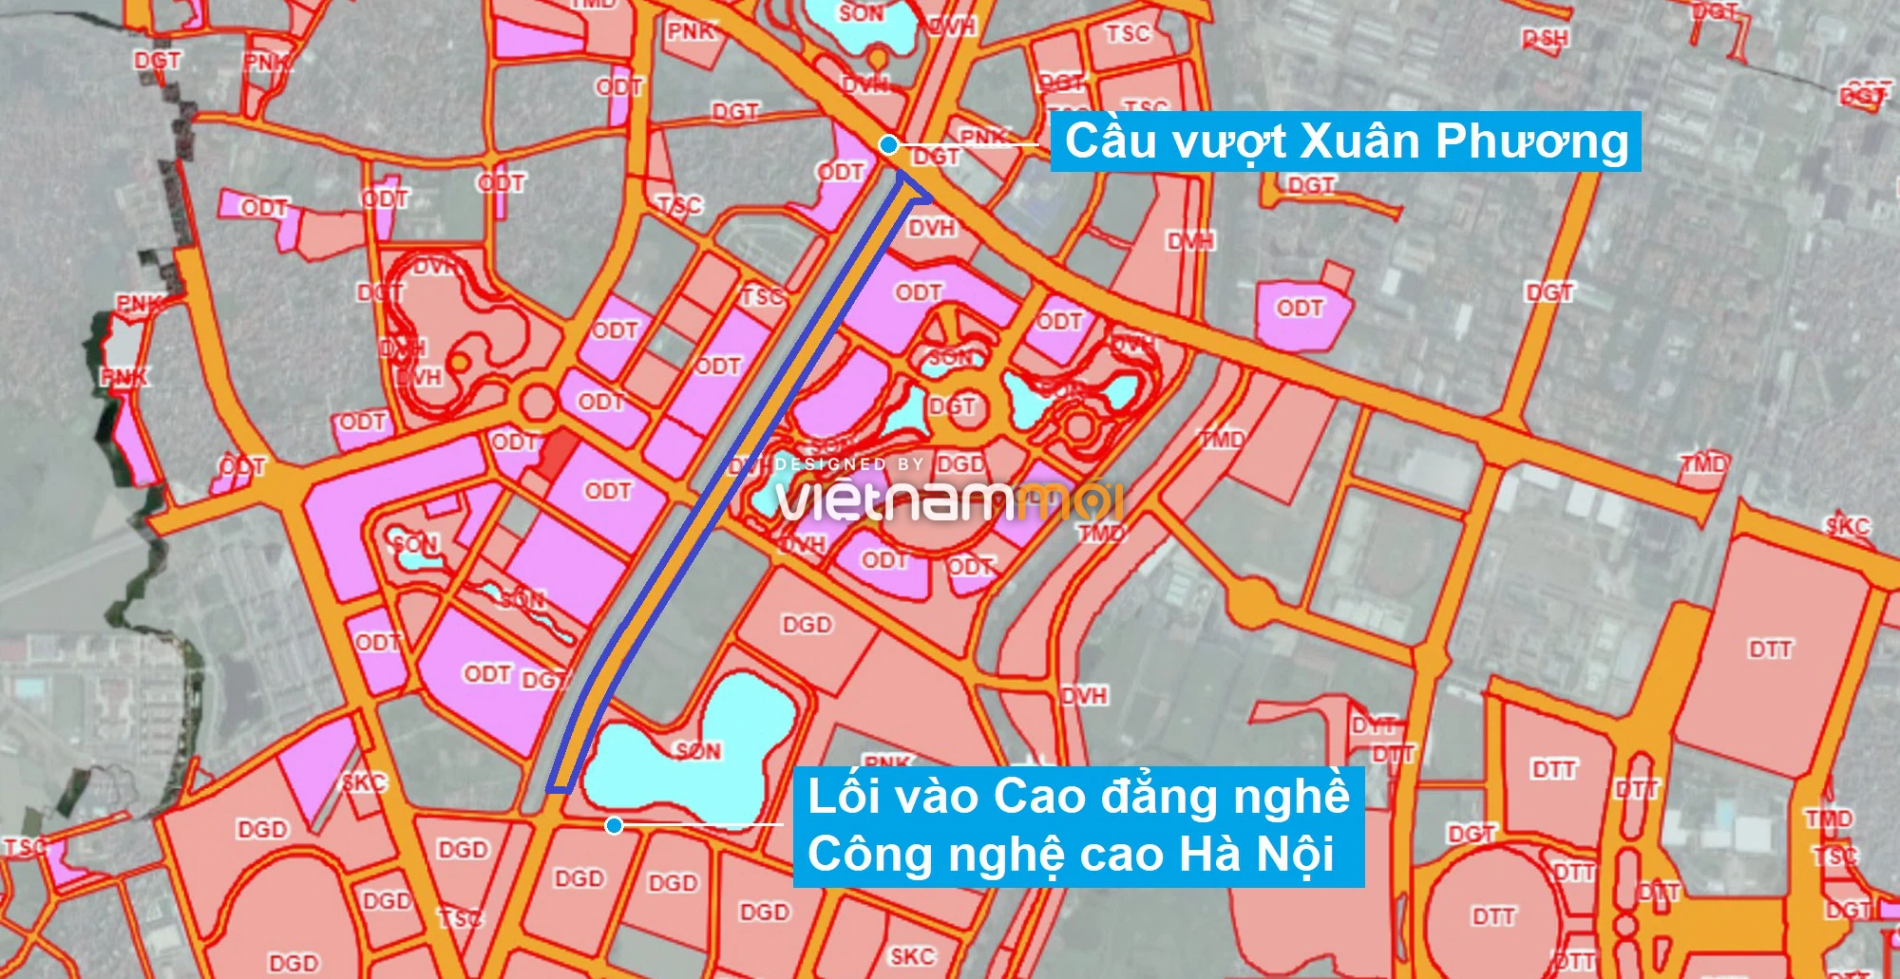 Những khu đất sắp thu hồi để mở đường ở phường Xuân Phương, Nam Từ Liêm, Hà Nội (phần 6) - Ảnh 1.